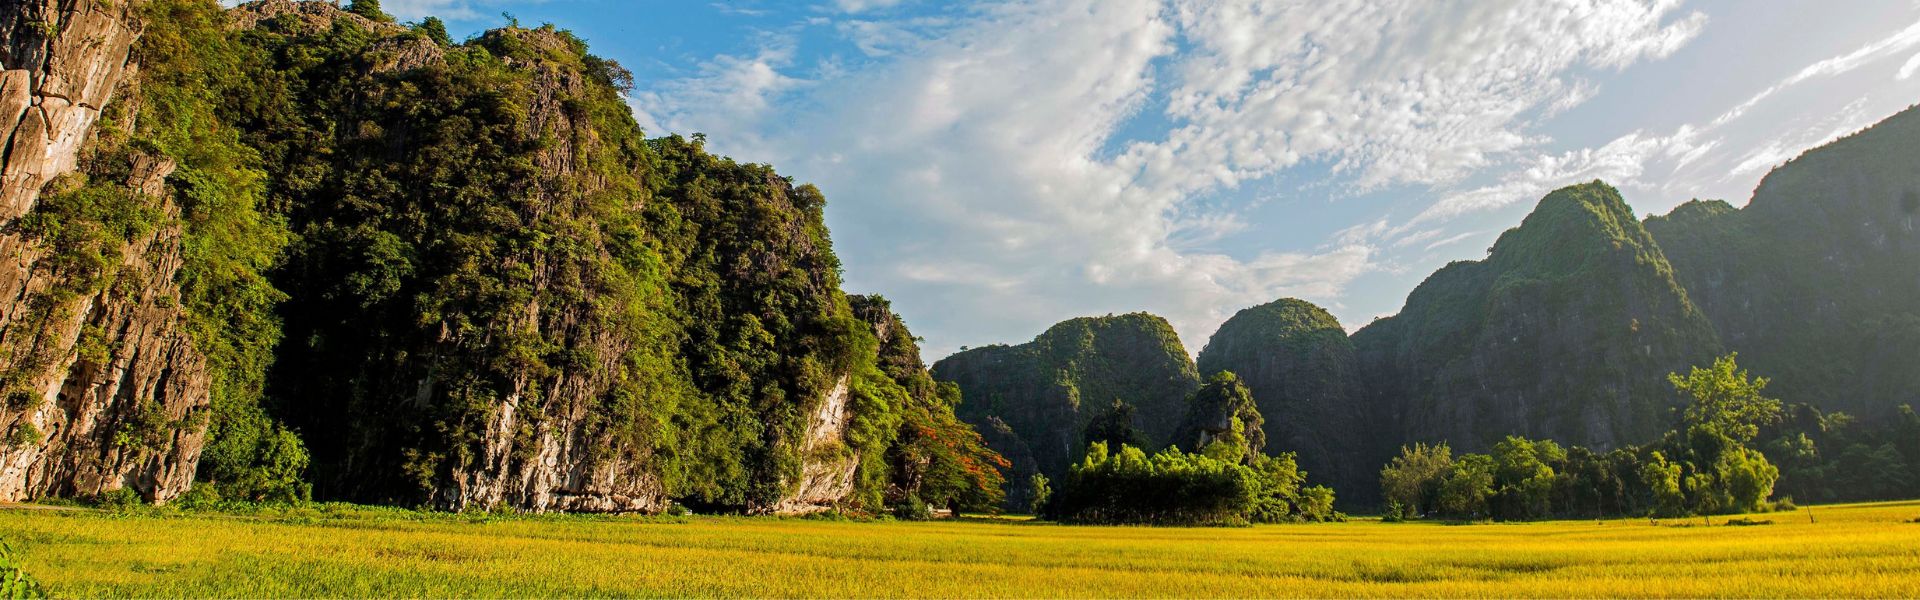 Ninh Binh - Consejos de viaje | Guía de viajes a Vietnam